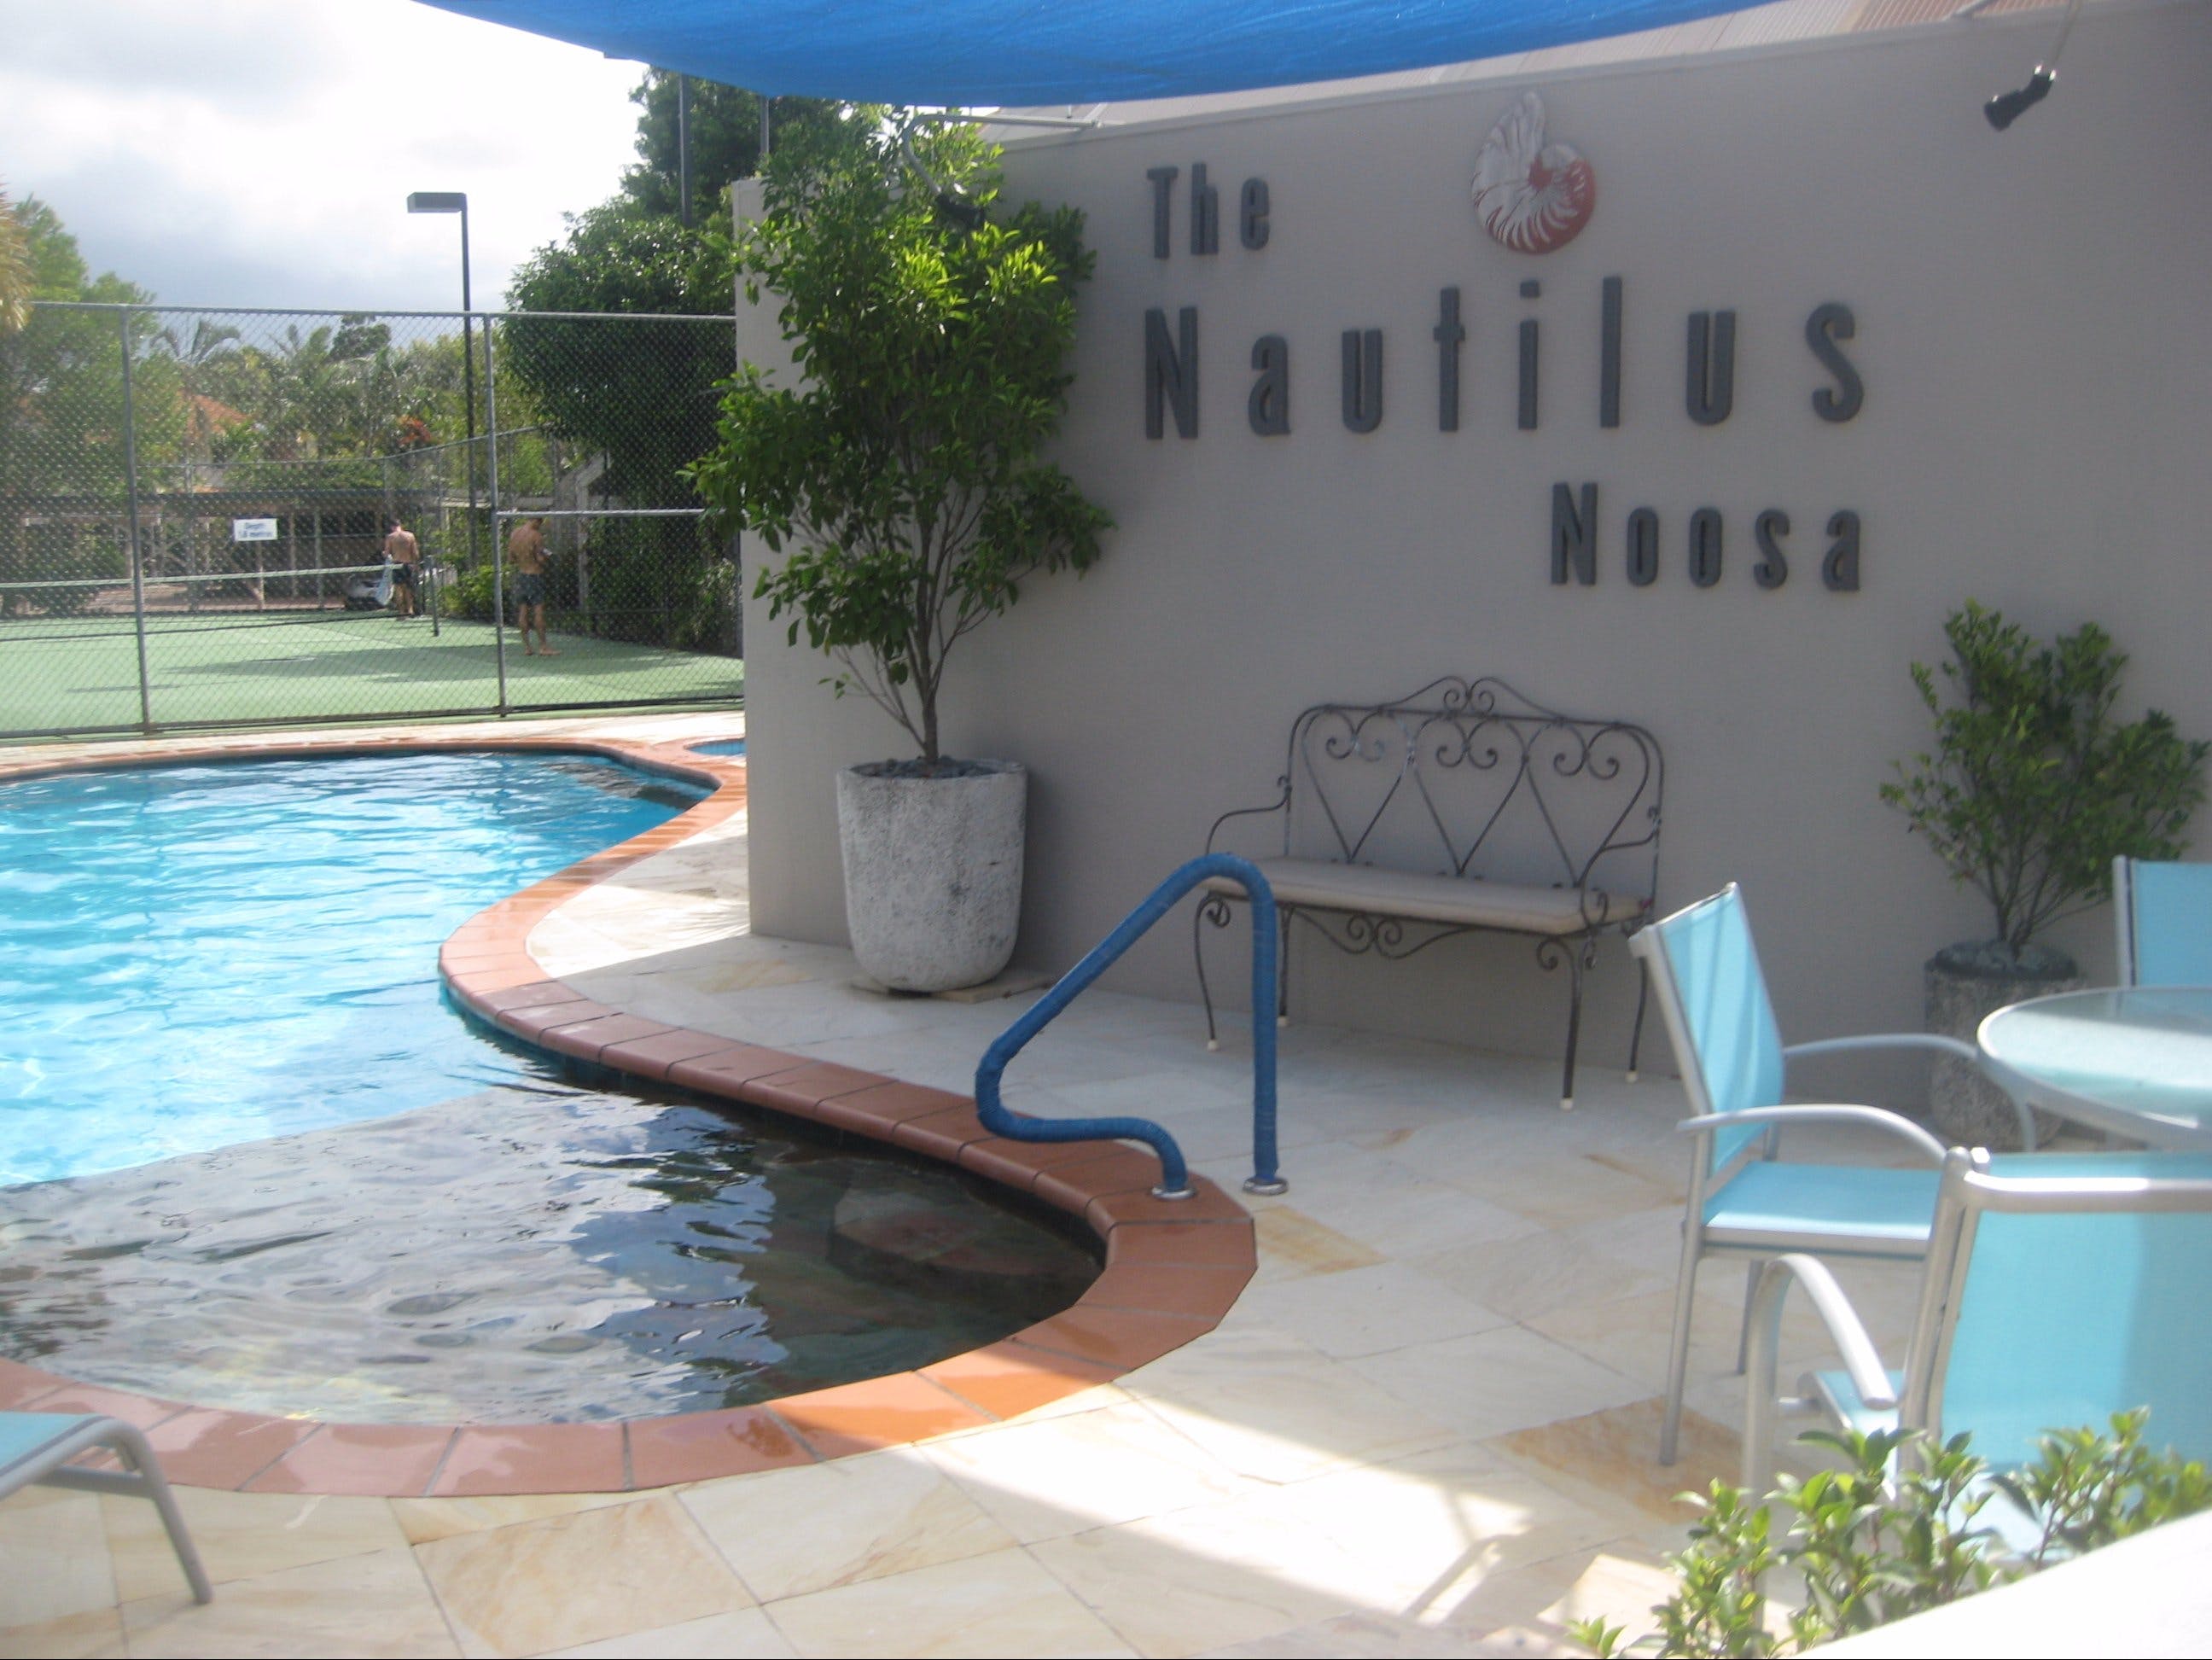 Nautilus Noosa Holiday Resort - thumb 2